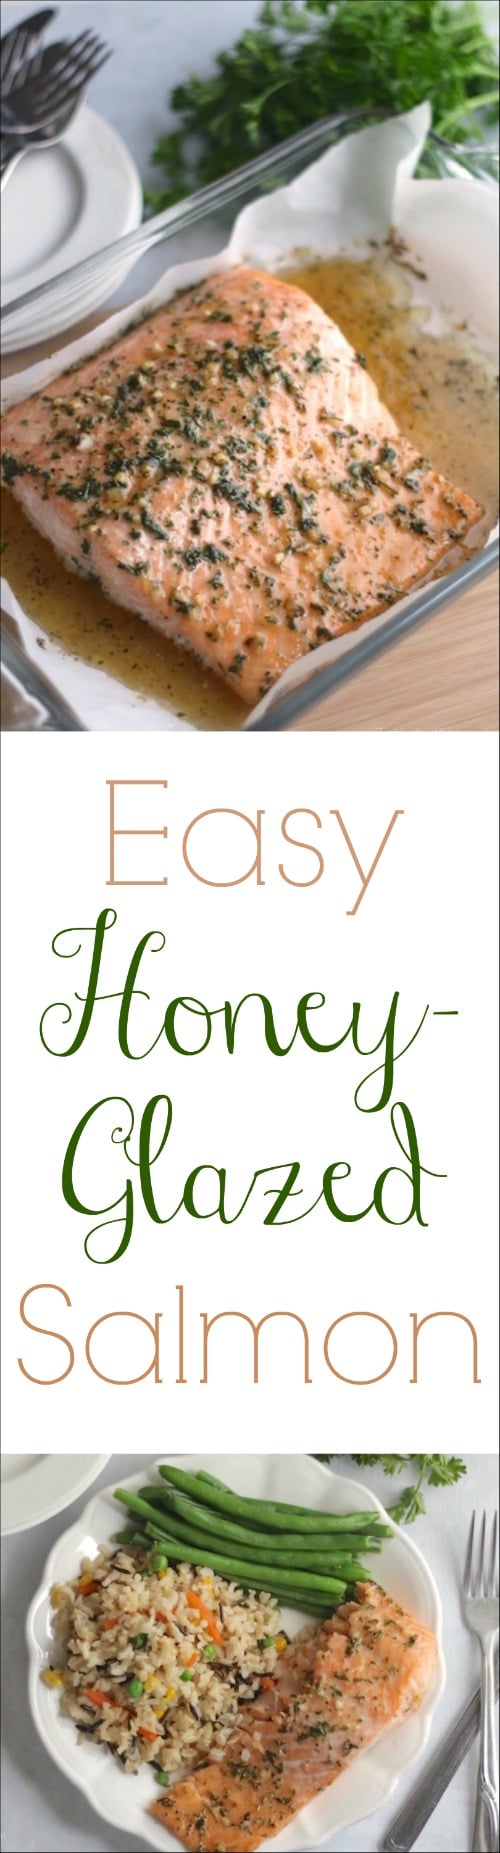 Easy Honey-Glazed Salmon Recipe {www.TwoHealthyKitchens.com}